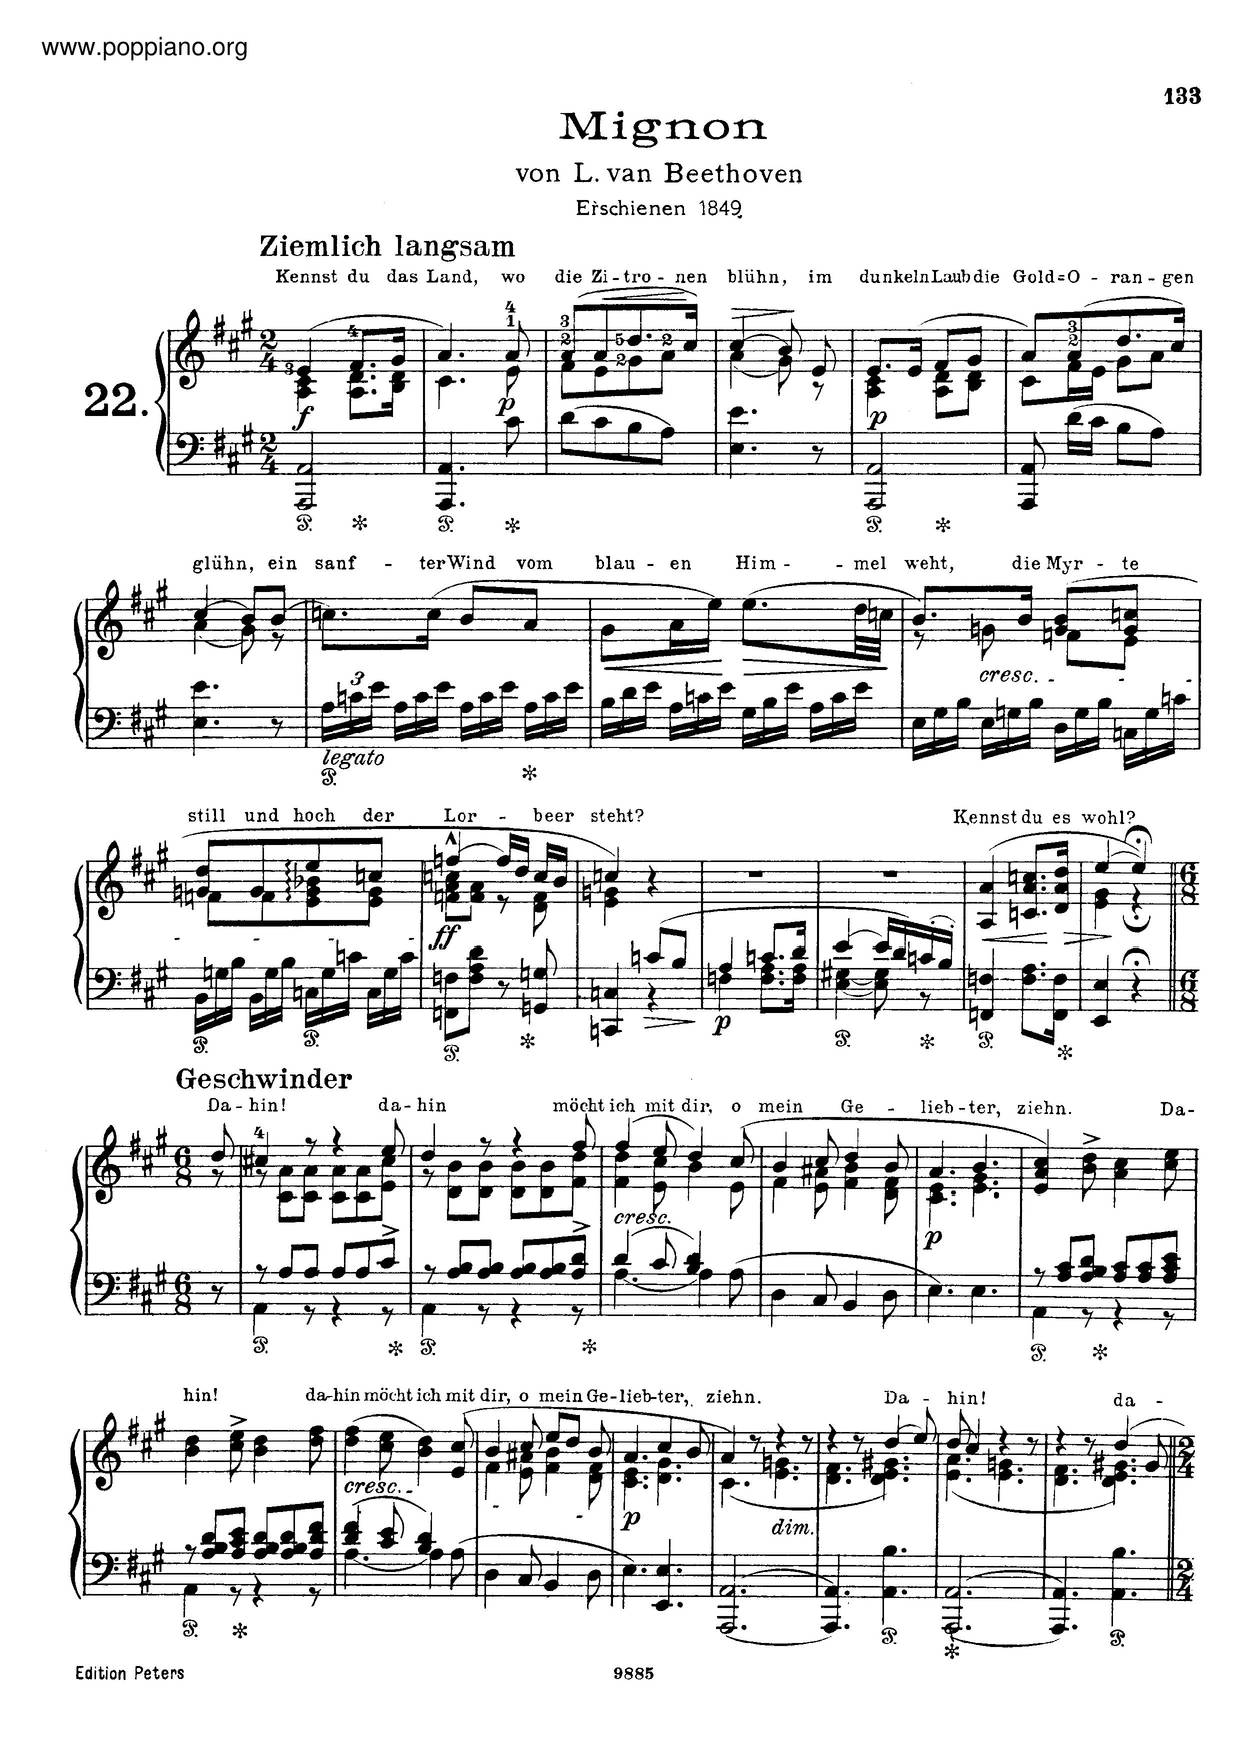 6 Lieder Von Goethe, By Beethoven, S.468ピアノ譜